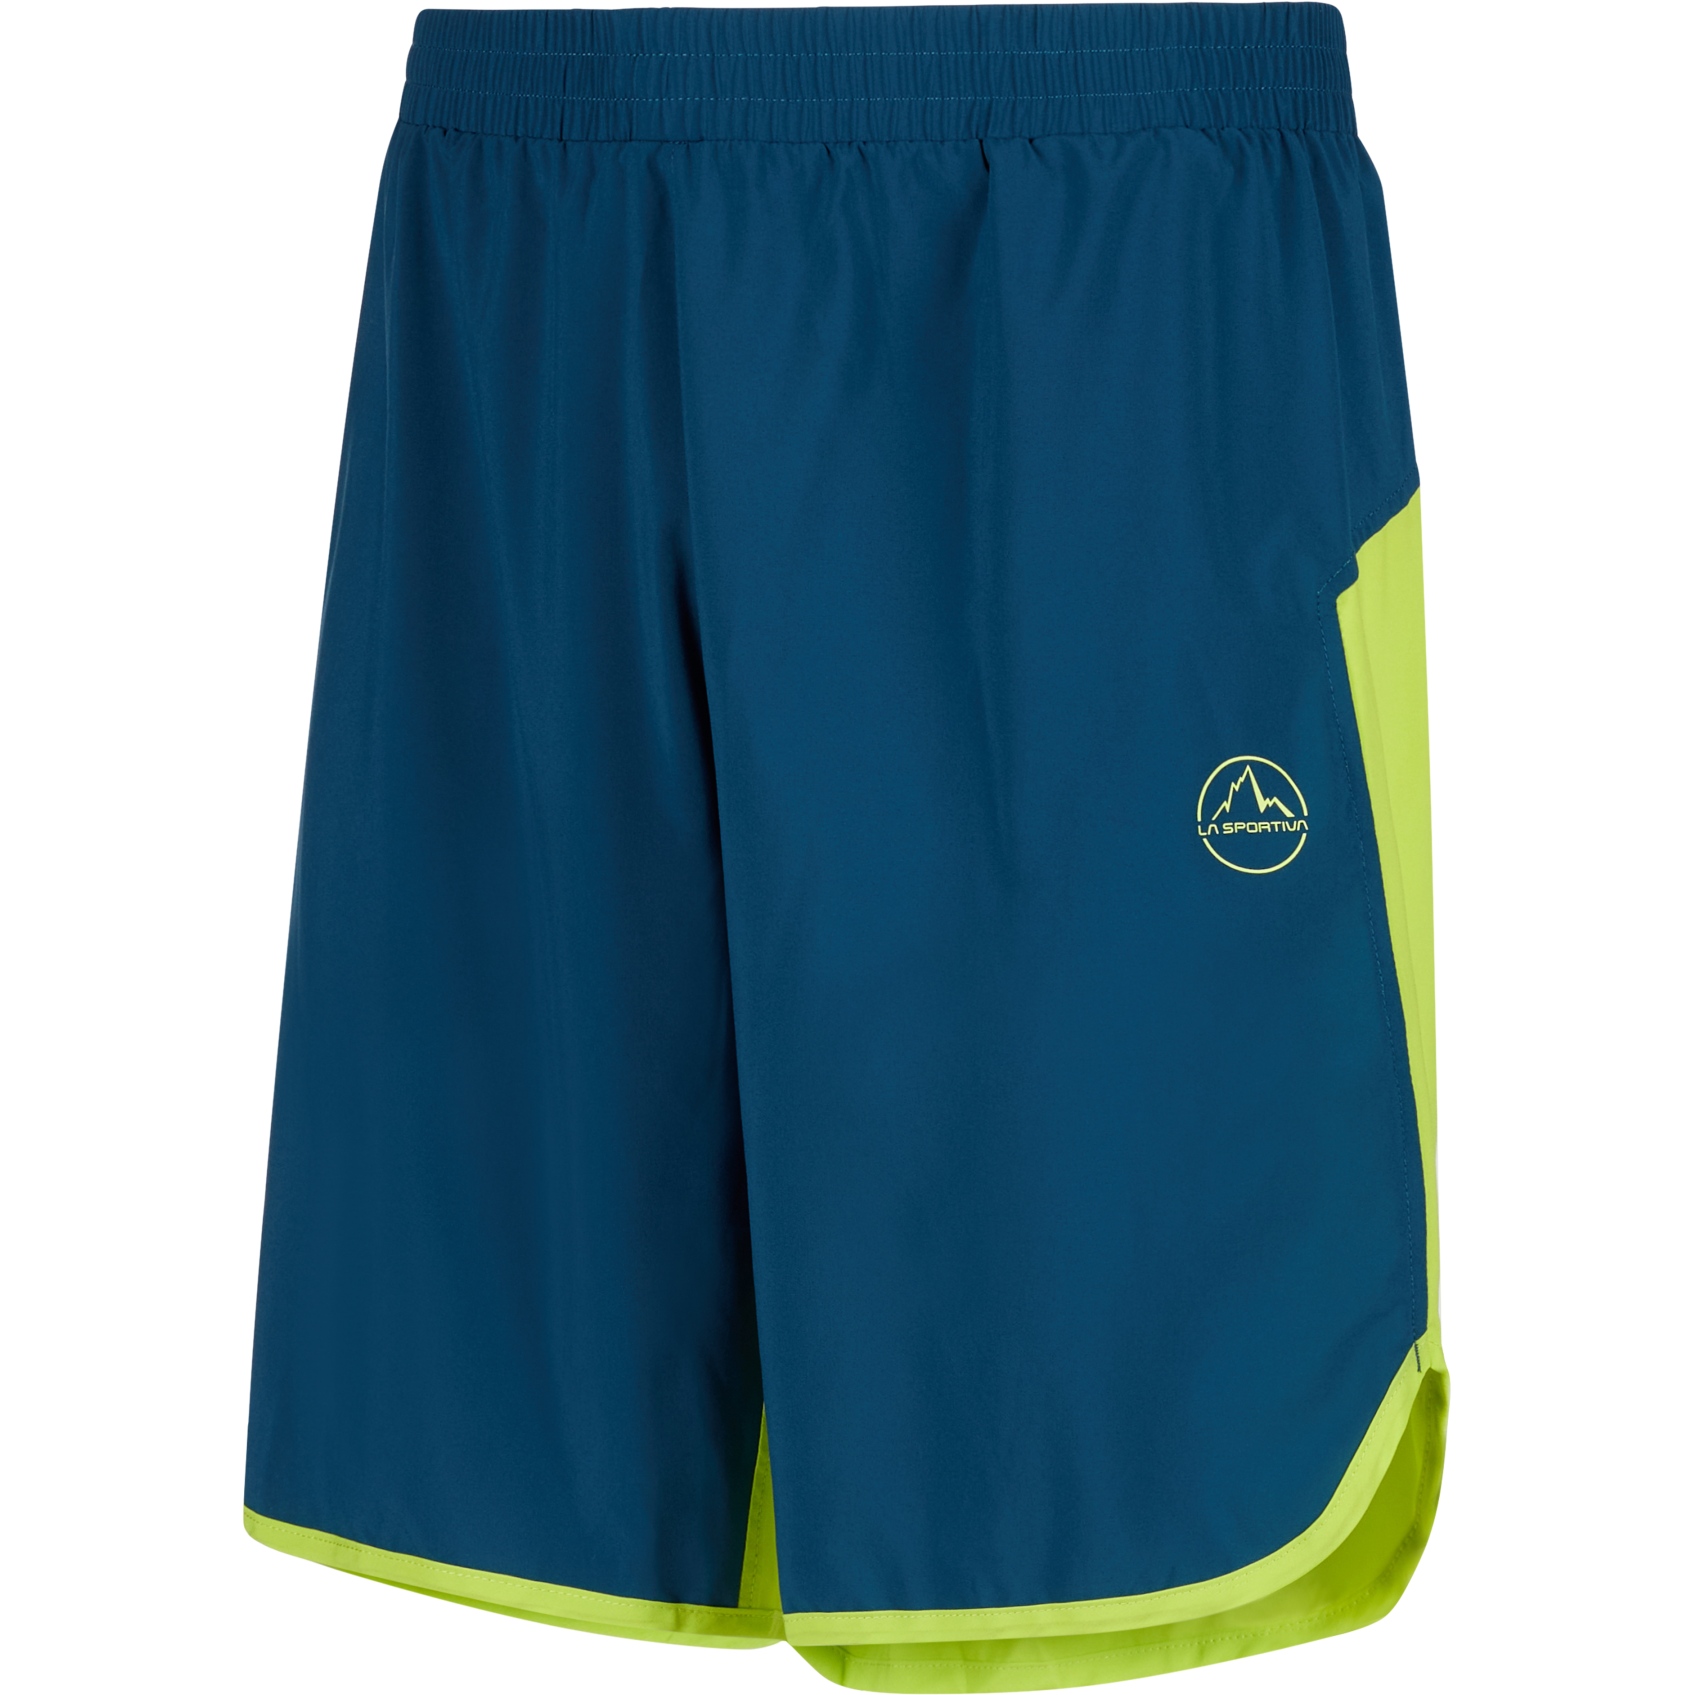 Produktbild von La Sportiva Sudden Shorts Herren - Storm Blue/Lime Punch